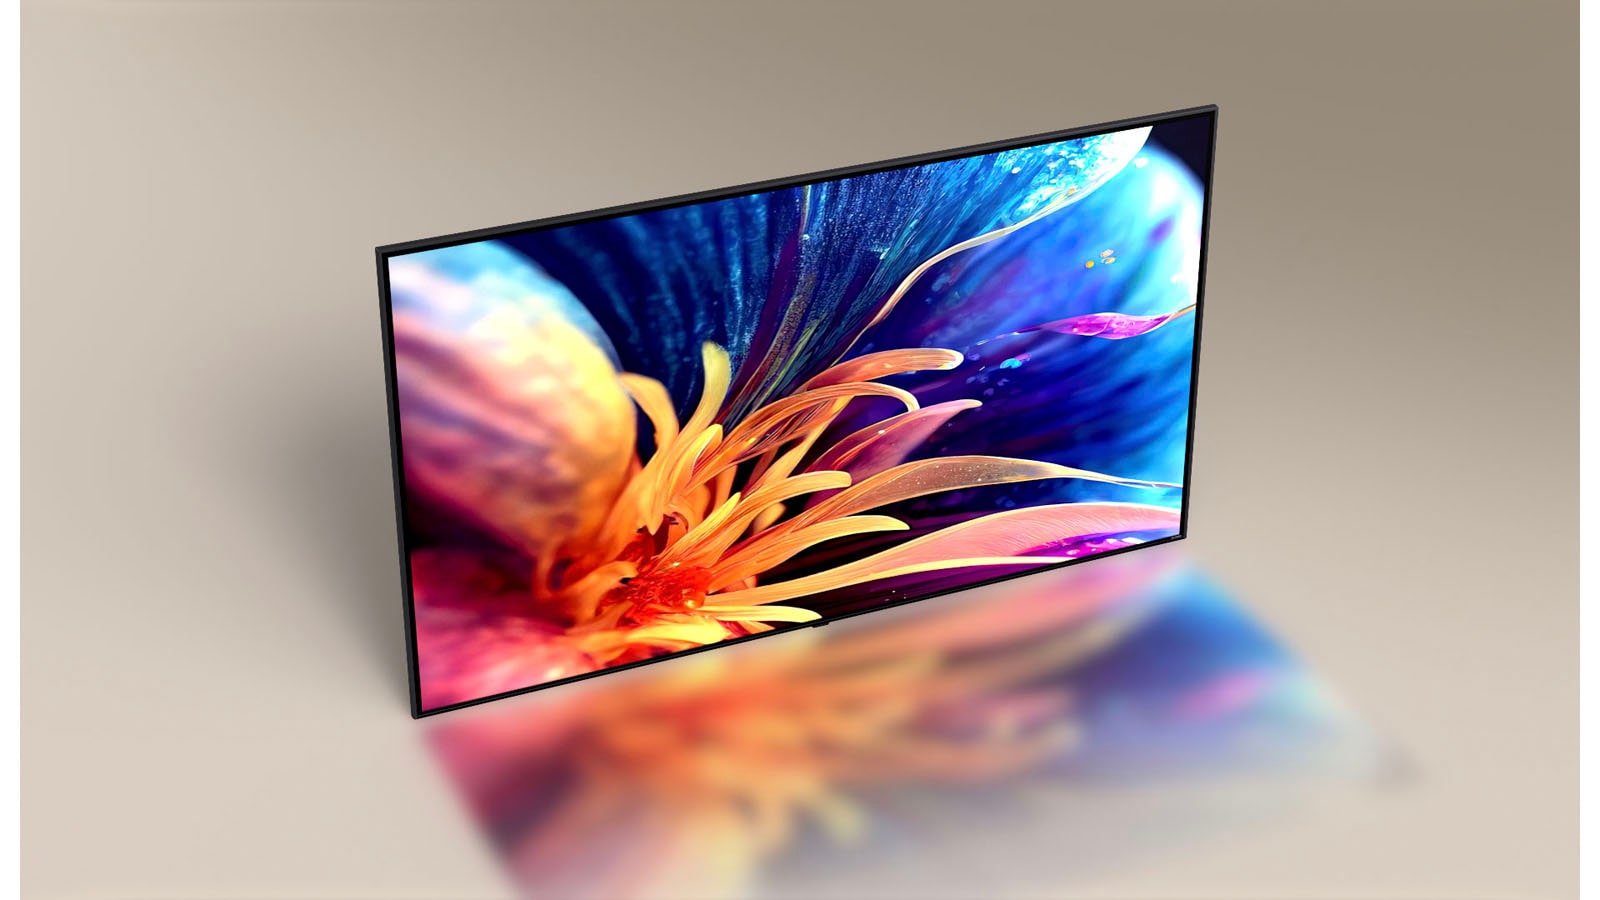 ทีวี LG ที่เพรียวบางเป็นพิเศษจากมุมกล้องแบบ Bird-Eye มุมกล้องเลื่อนเพื่อแสดงด้านหน้าของทีวี โดยแสดงภาพดอกไม้สีสันสดใสที่ซูมเข้า